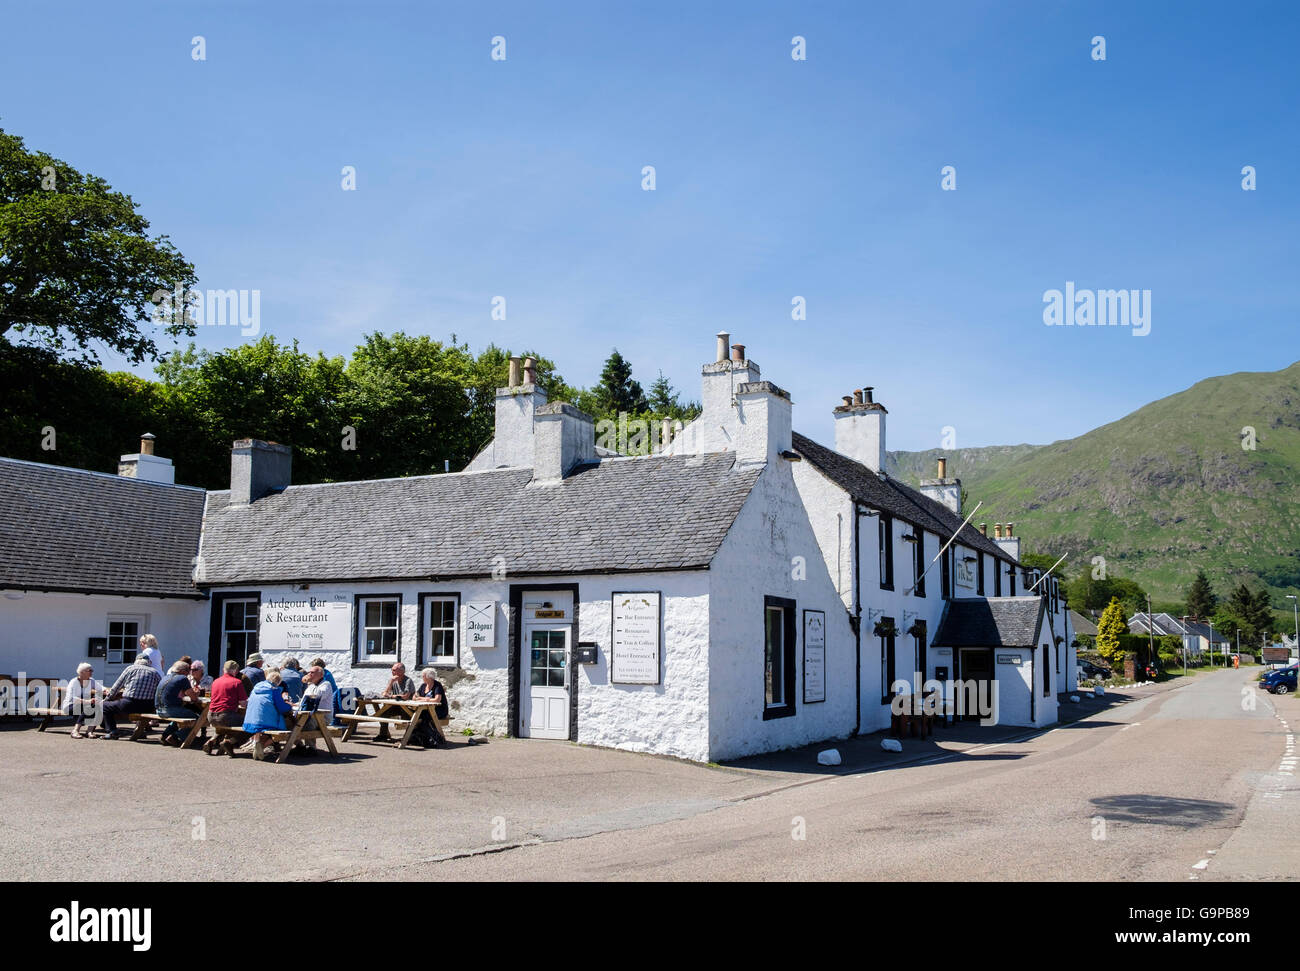 The Inn at Ardgour ist eine traditionelle Country Pub und Hotel im Sommer. Corran Fort William, Inverness-shire Highlands Schottland Großbritannien Großbritannien Stockfoto